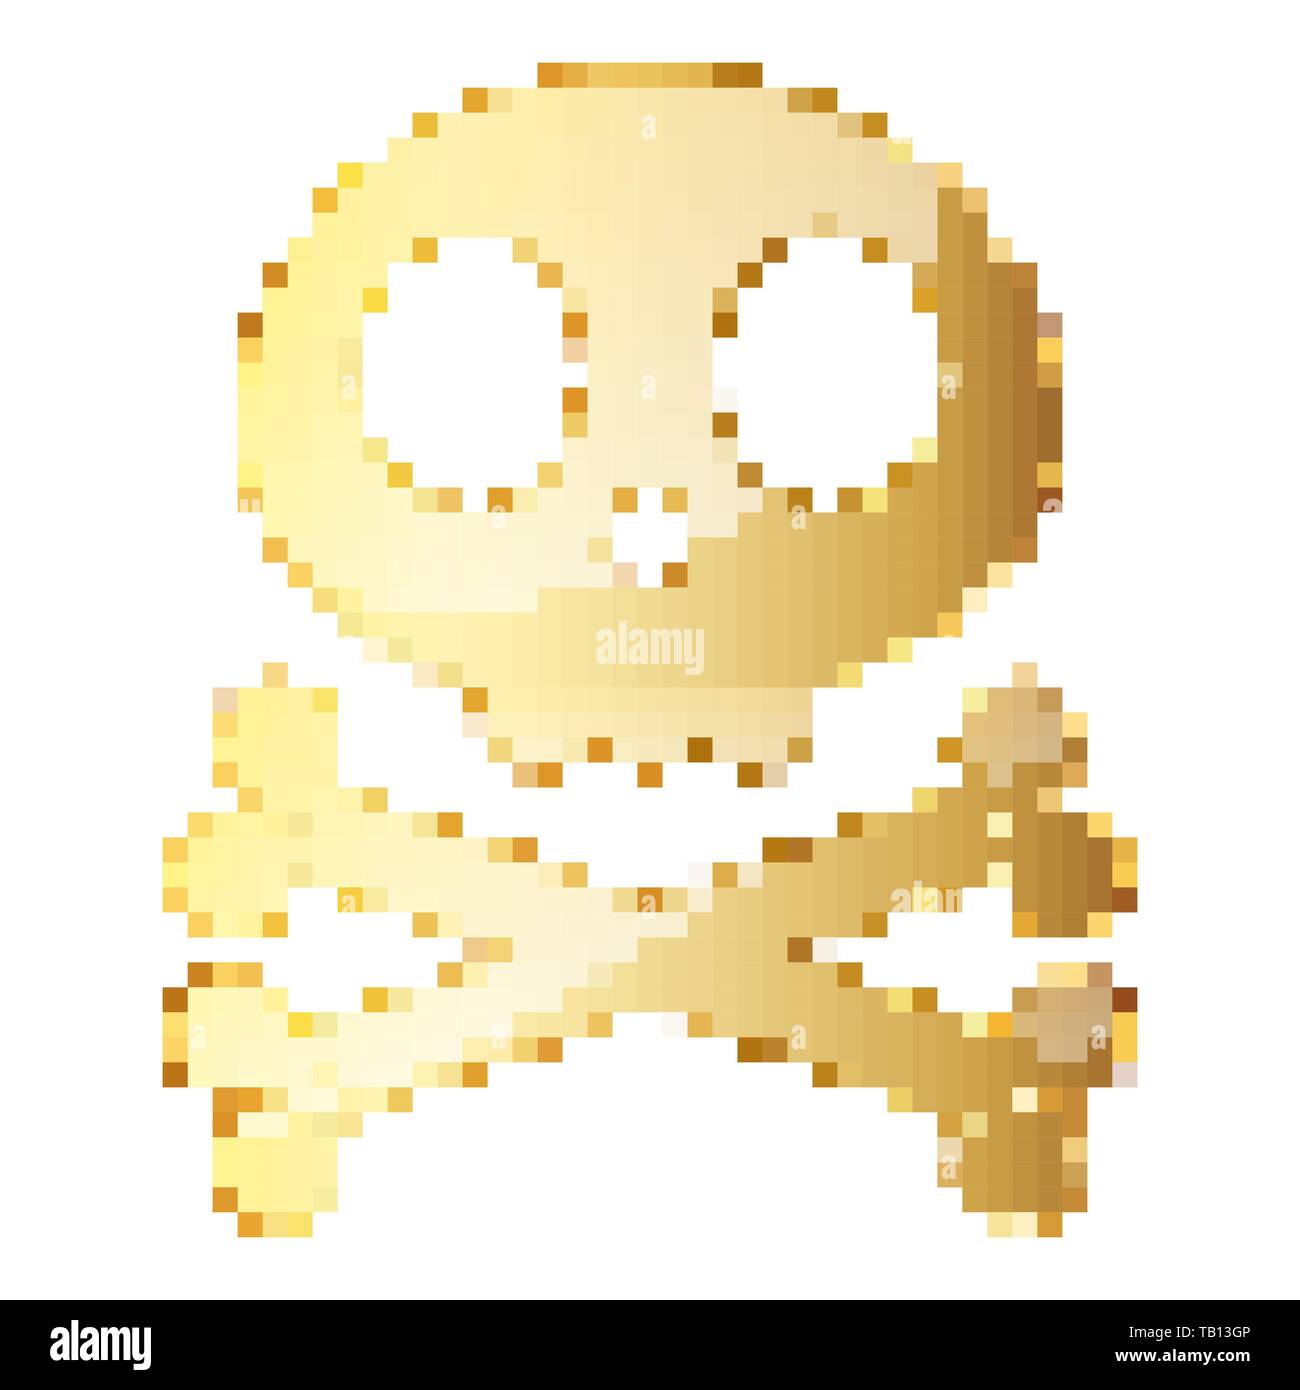 Gold Skull mit Knochen in Pixel art Stil. Vector Illustration. Isolierte menschliche Schädel im flachen Stil Stock Vektor